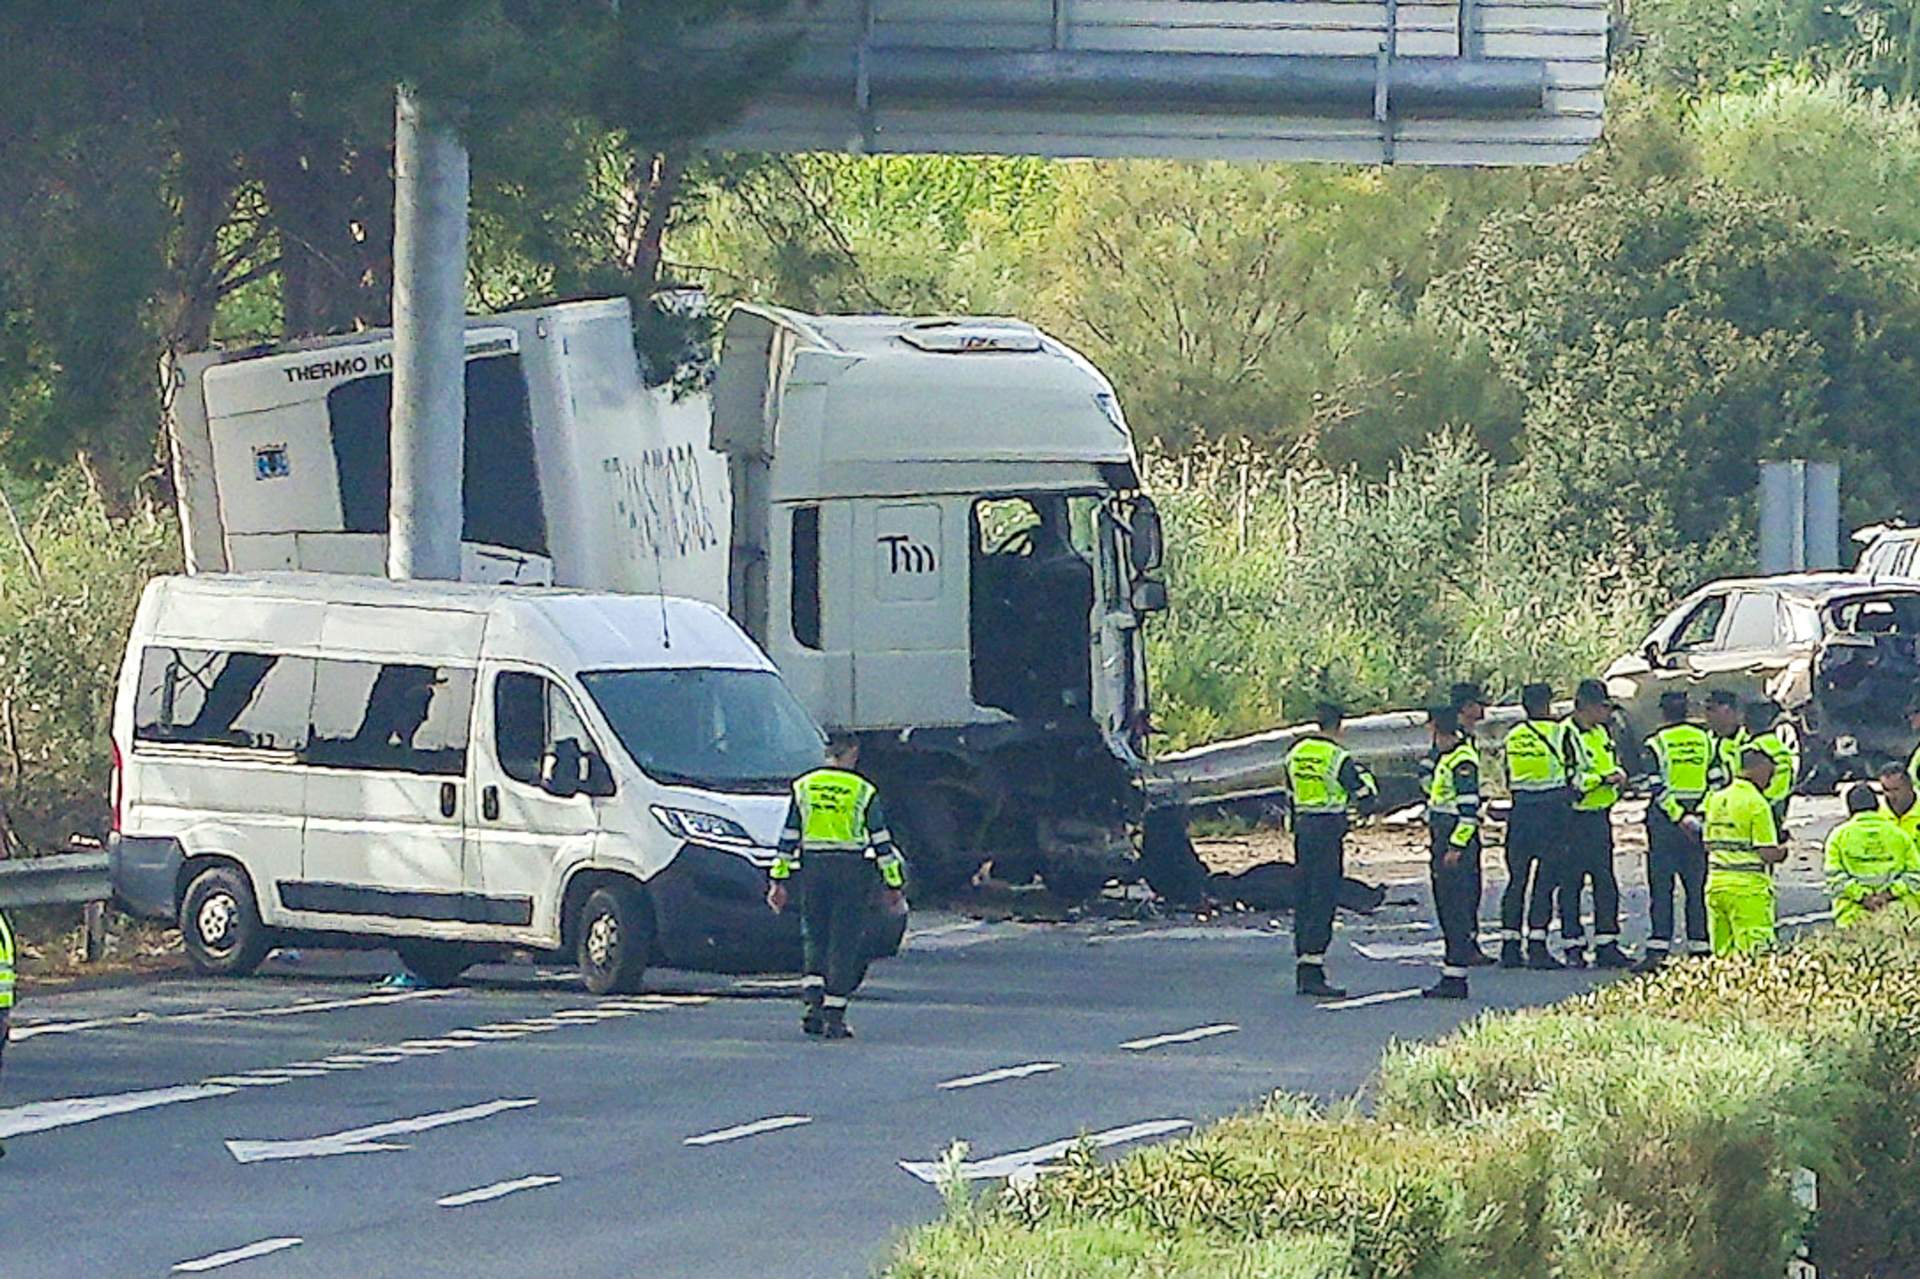 Recibe el alta hospitalaria uno de los guardias civiles heridos en el accidente de la AP-4, en Sevilla